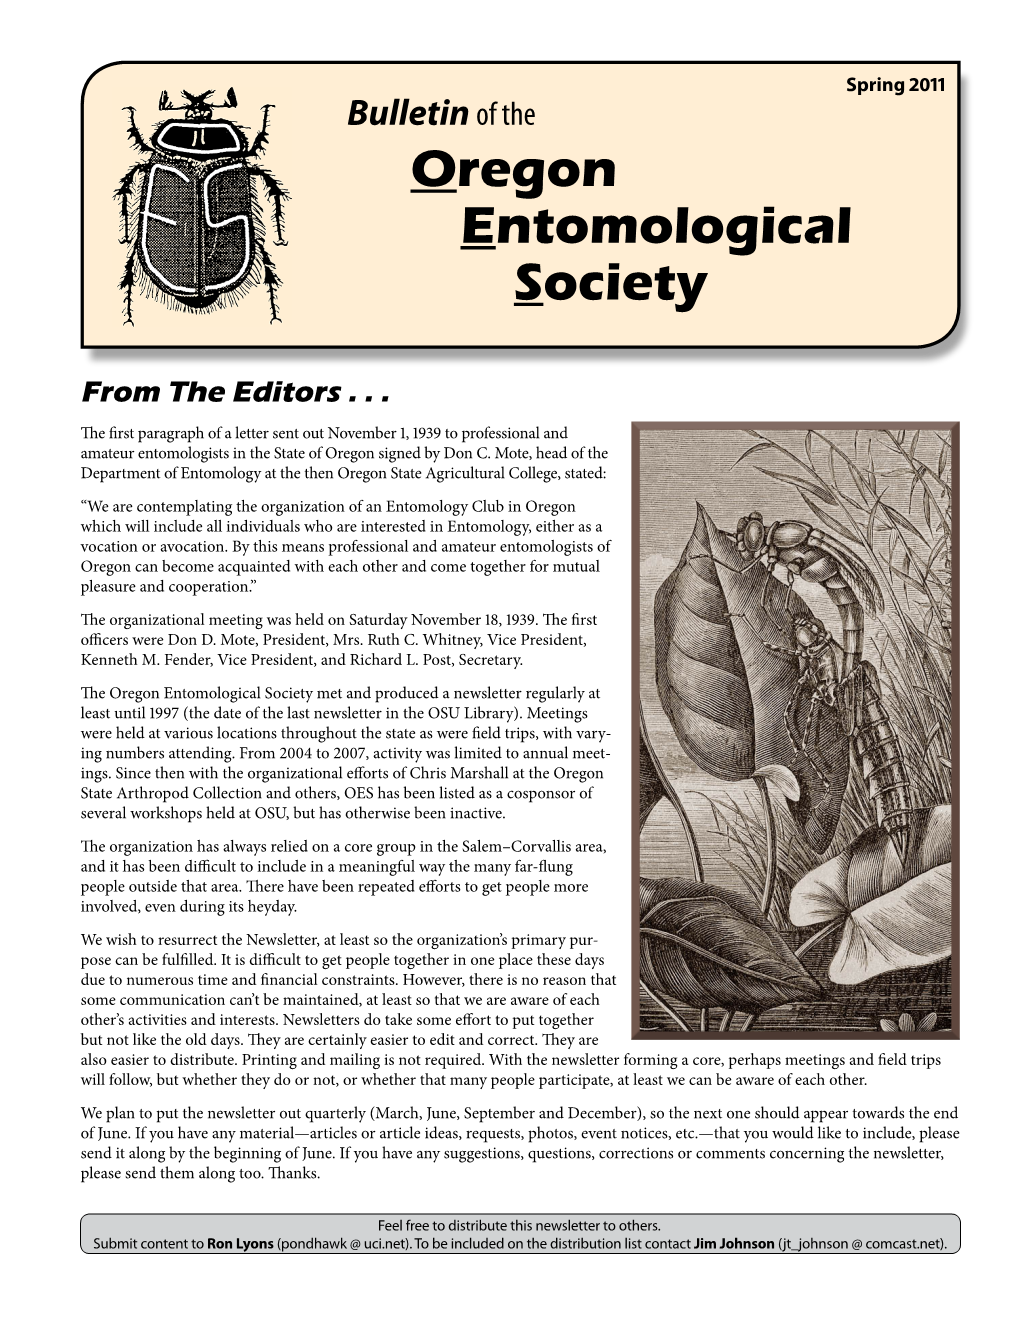 Spring 2011 Bulletin of the Oregon Entomological Society